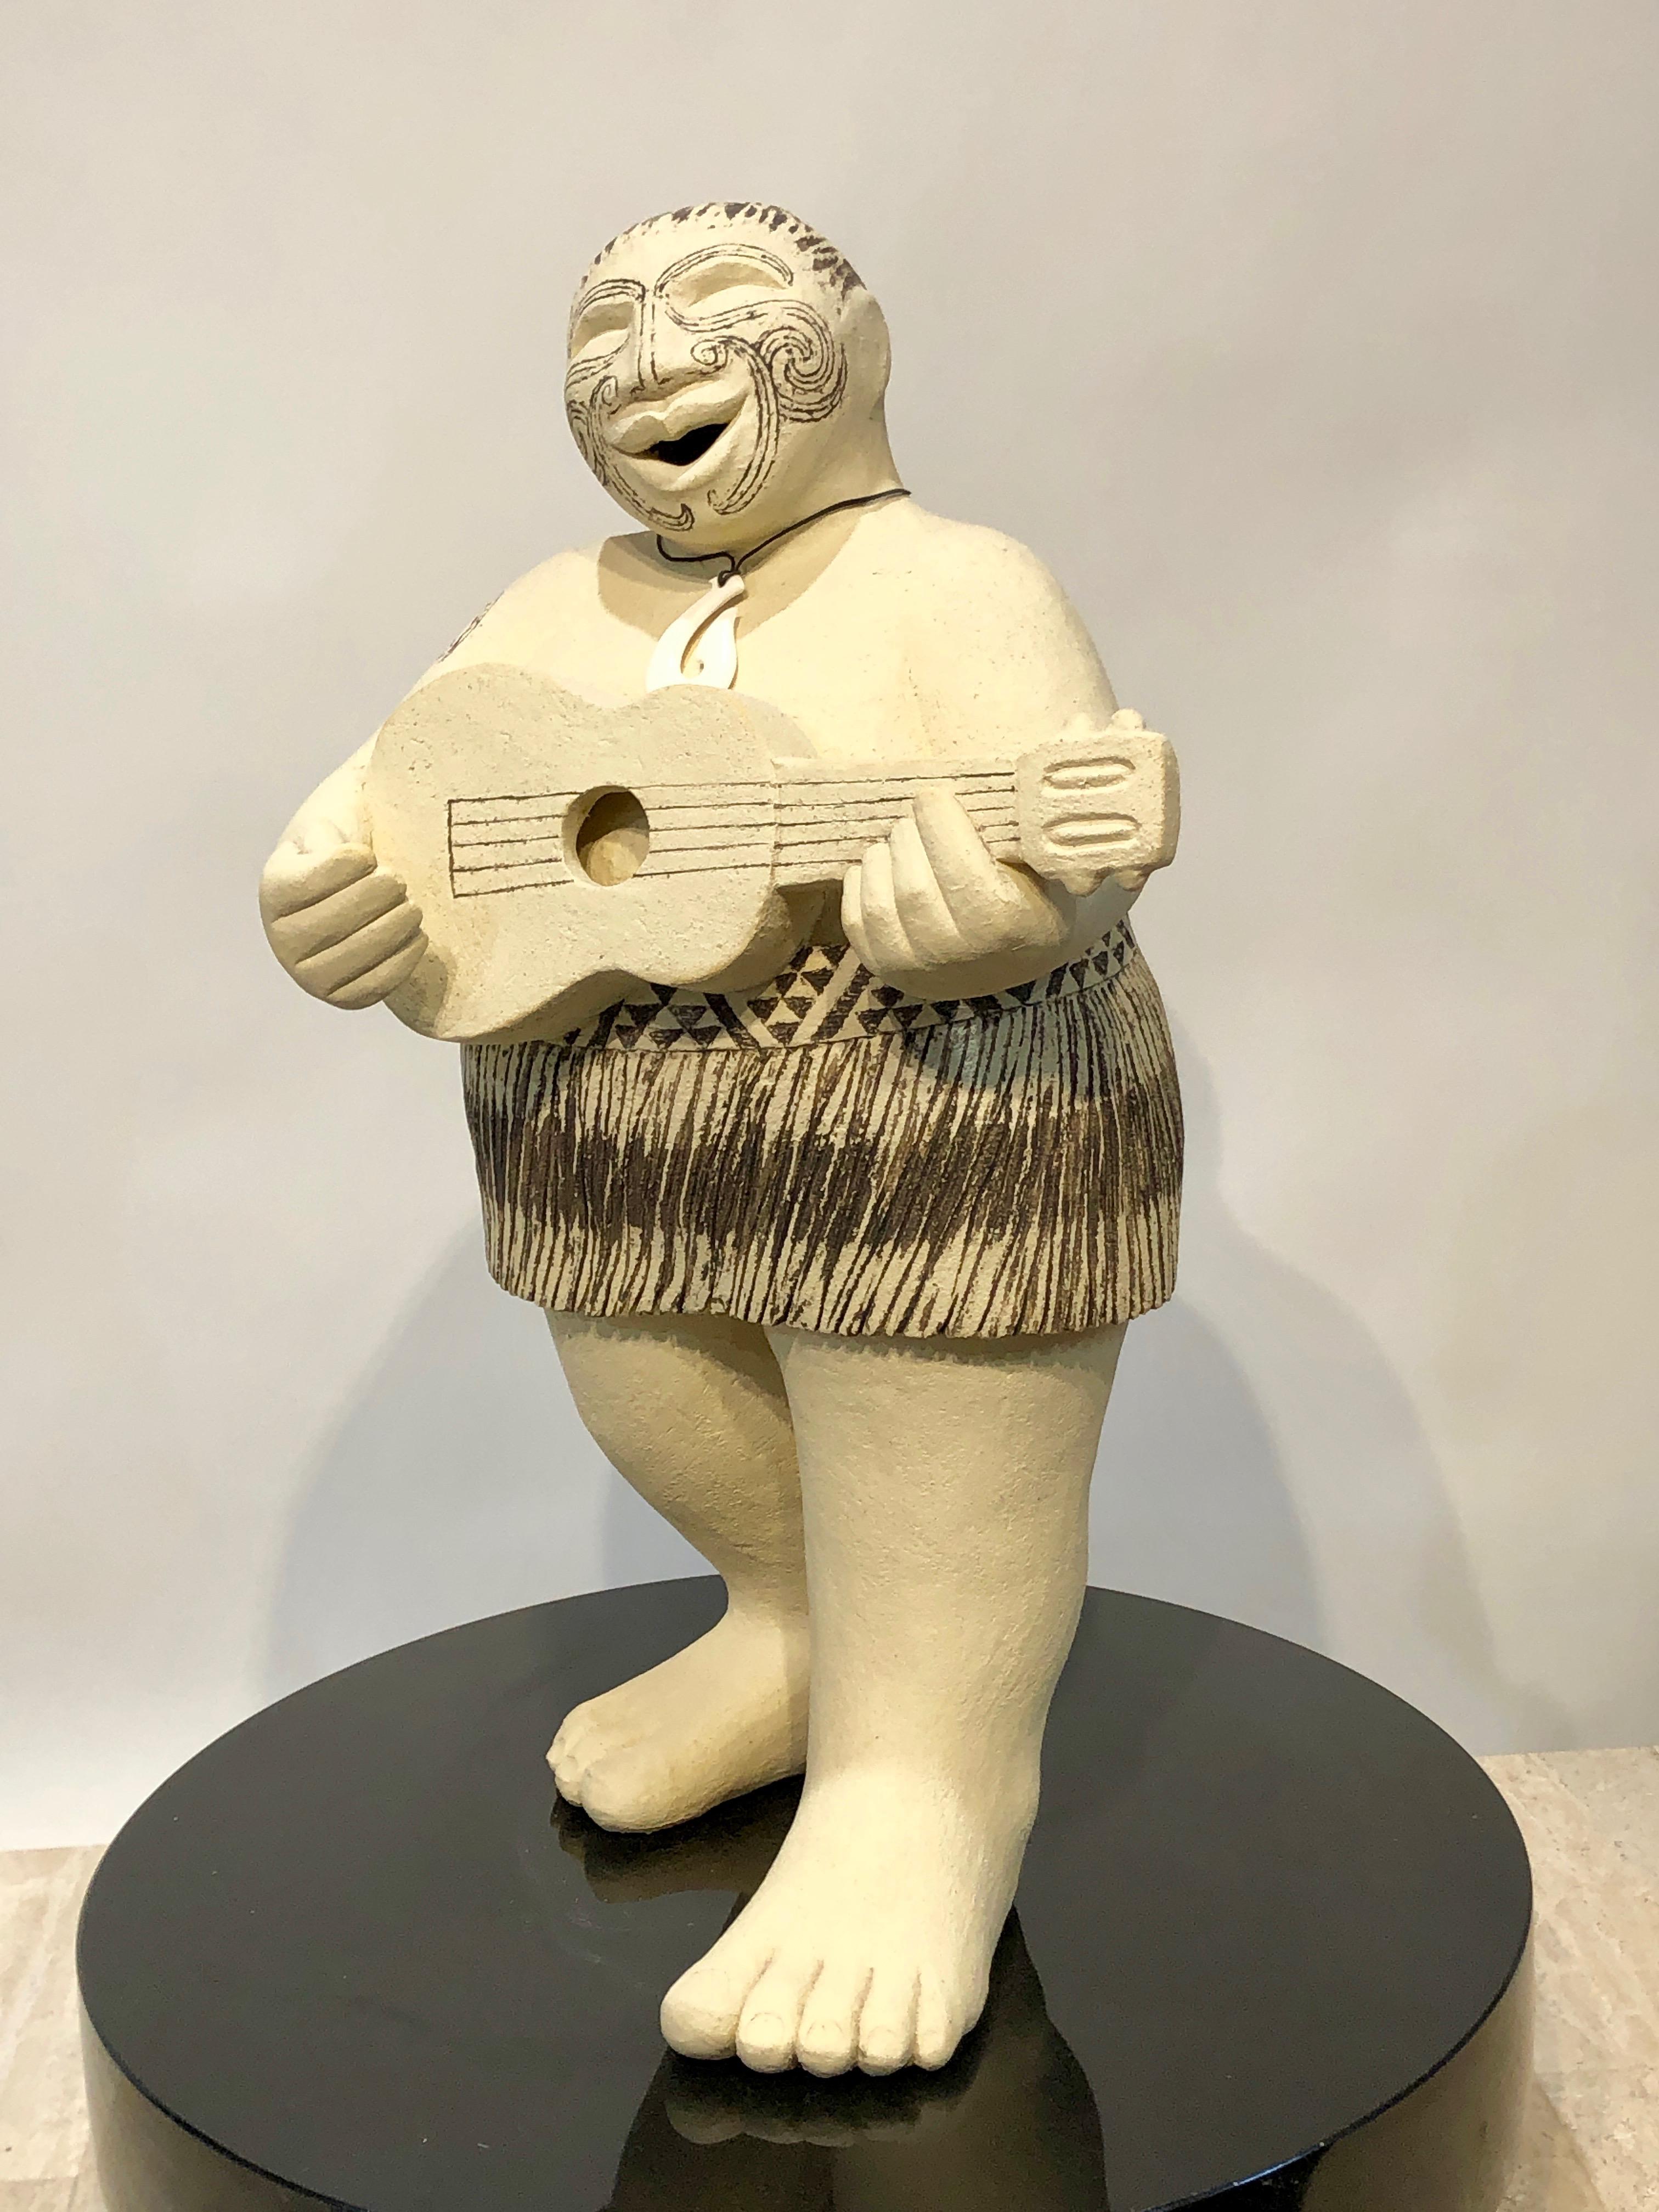 Waita - Song, Zeitgenössische Maori-Skulptur, Aotearoa, Gesichtsmoko, Tattoo, männlich